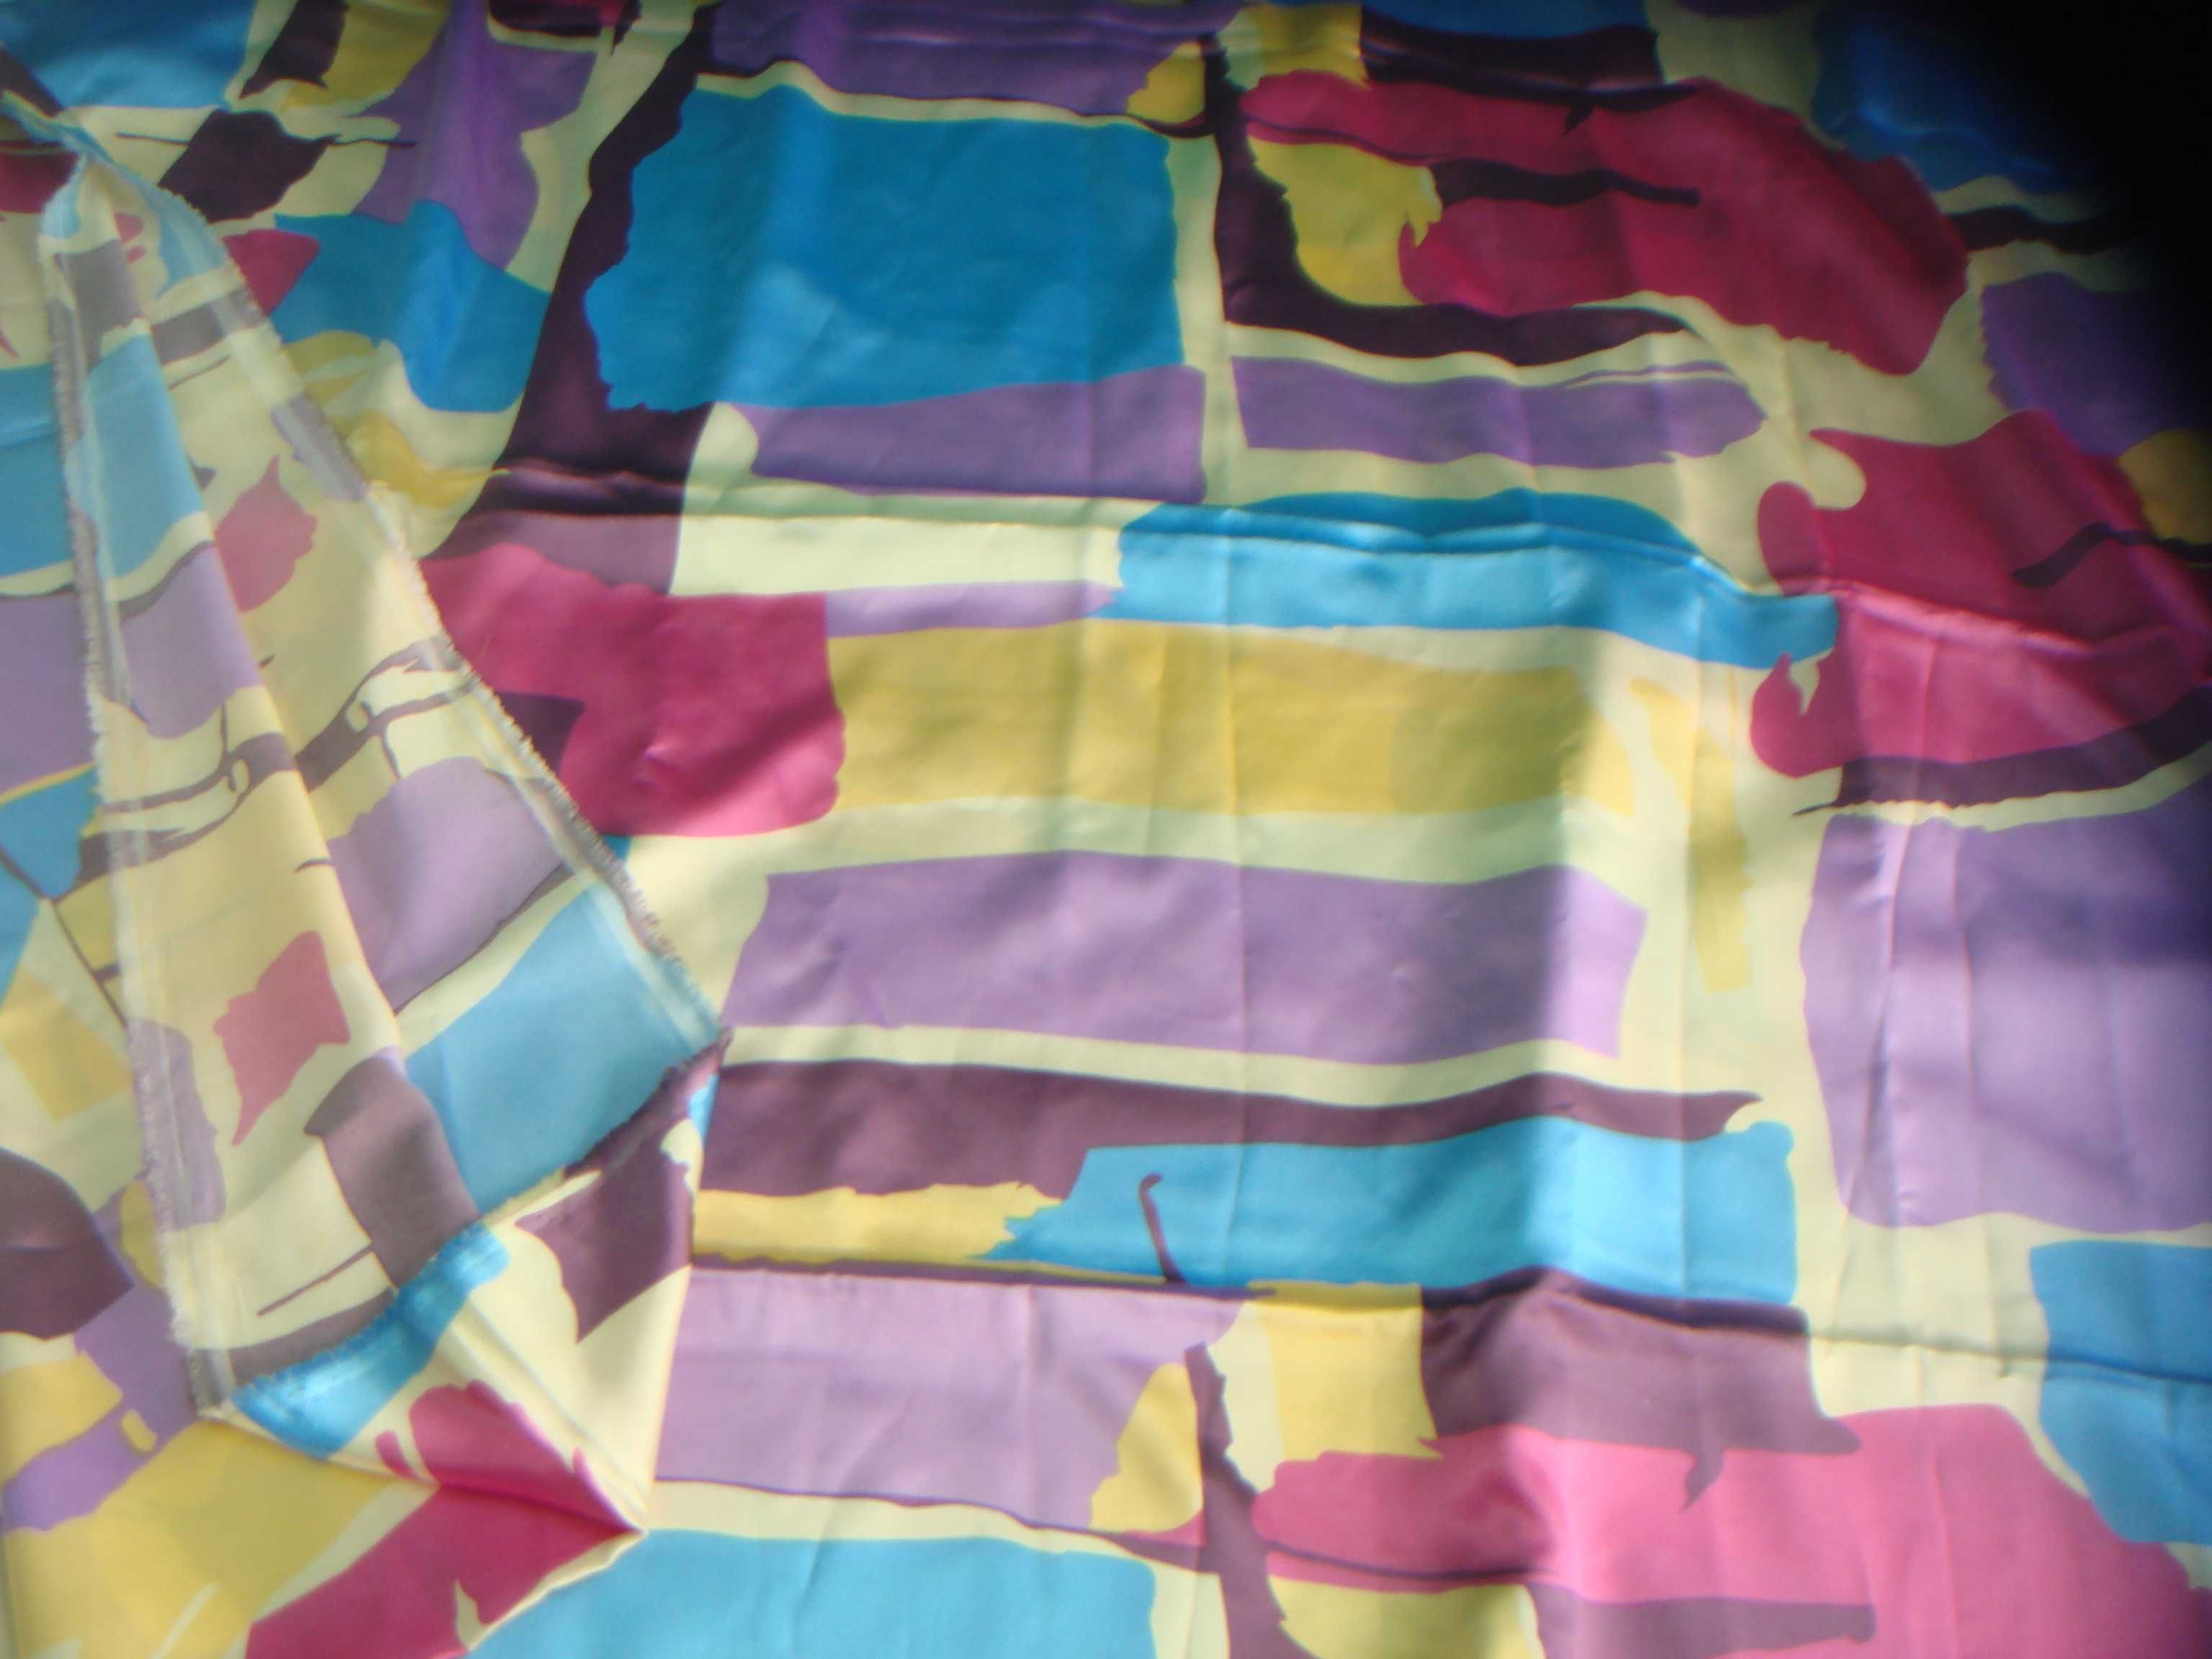 Ткань Натуральный Шелк Япония, Сатин Цветной и Зебра 2М на 1,5м отрезы